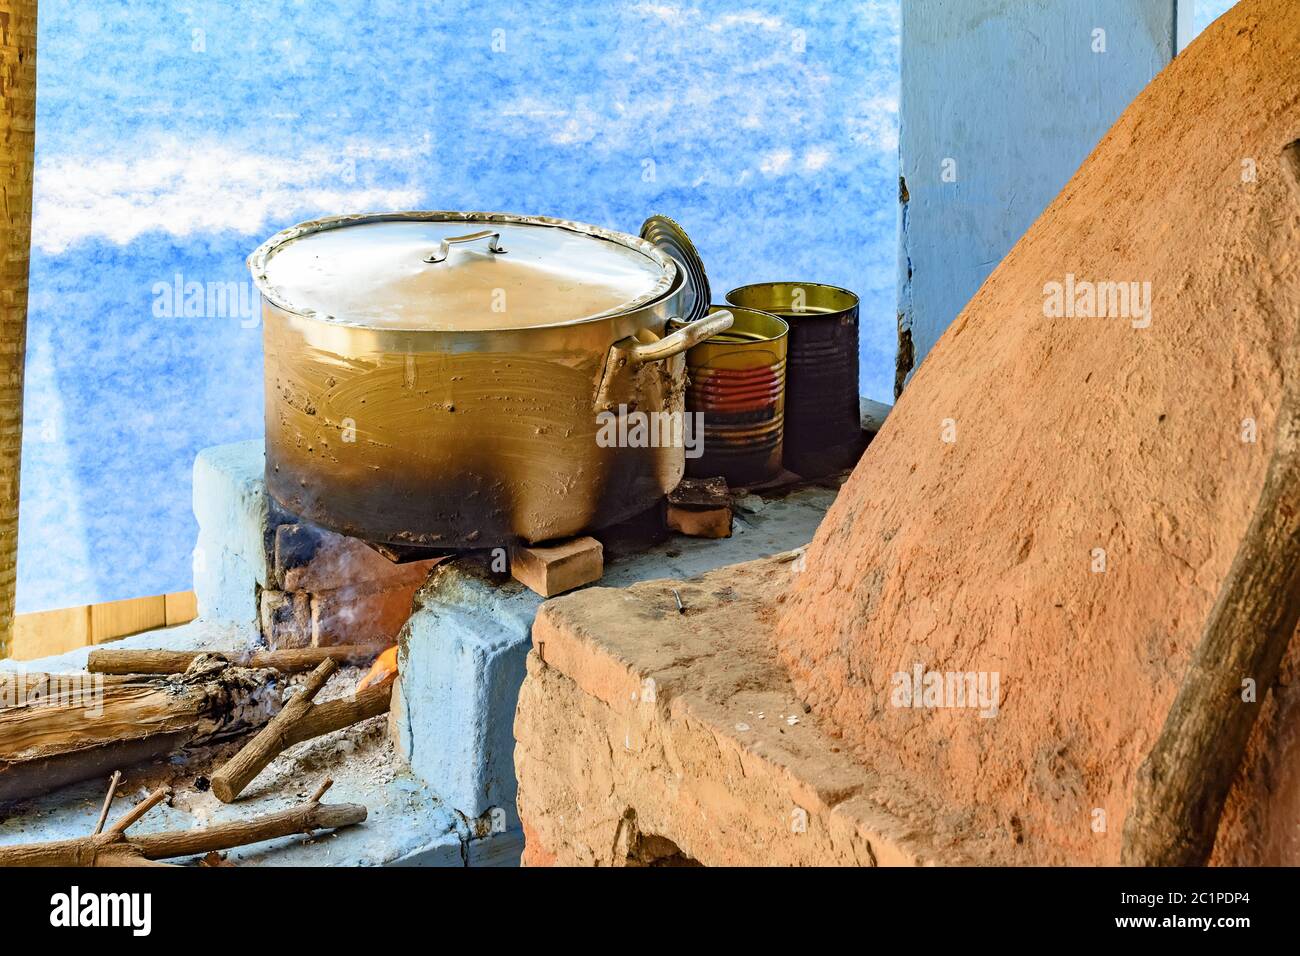 Cucina rustica dettaglio all'interno del Brasile con stufa a legna e forno di argilla Foto Stock